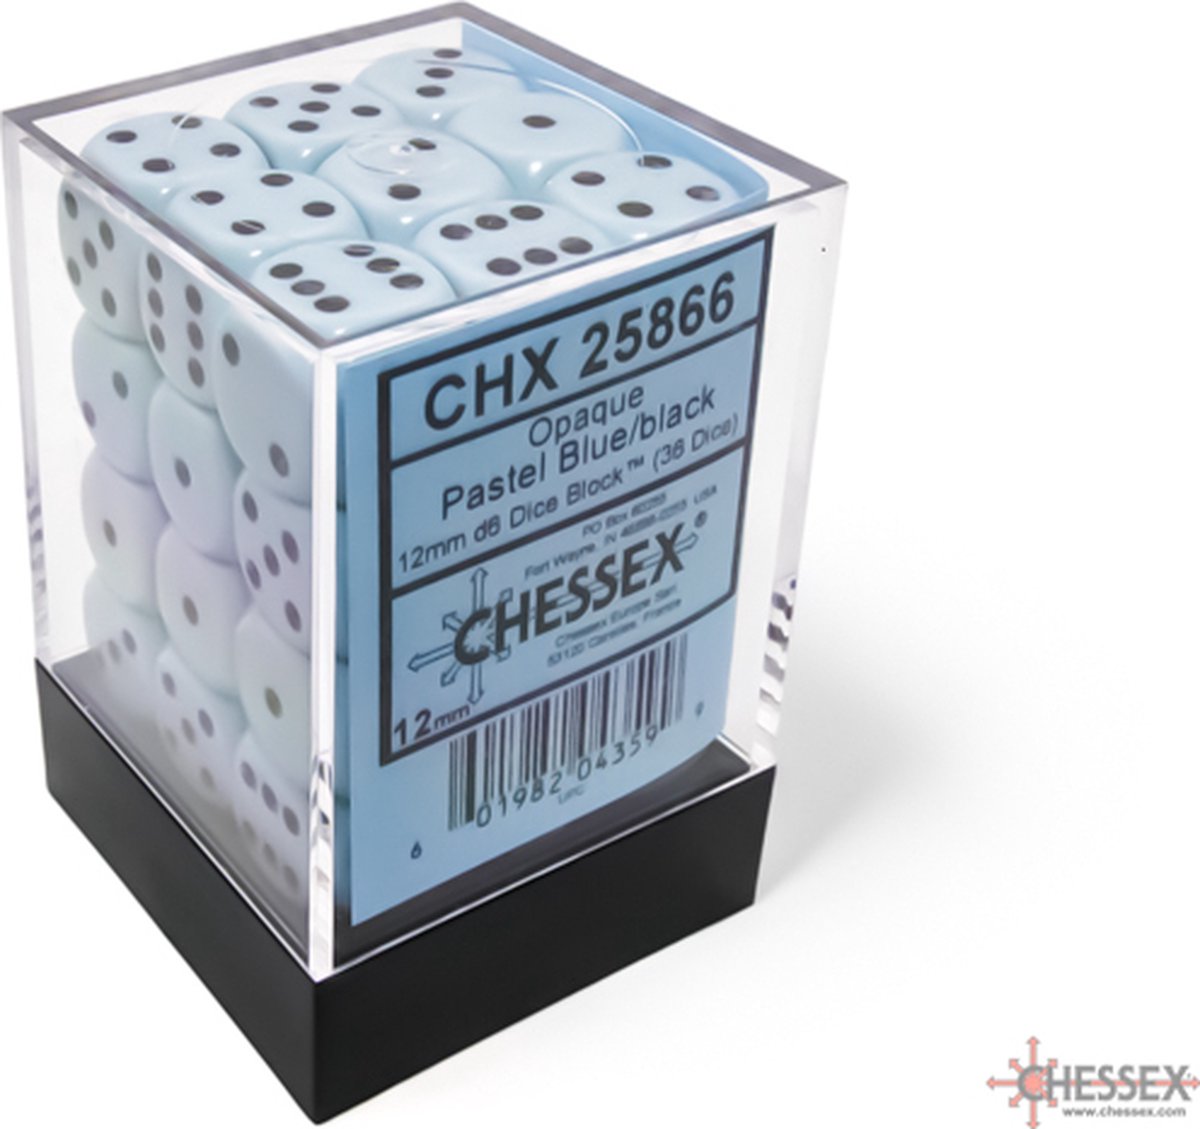 Chessex 36 x D6 Set Opaque Pastel 12mm - Blue/Black